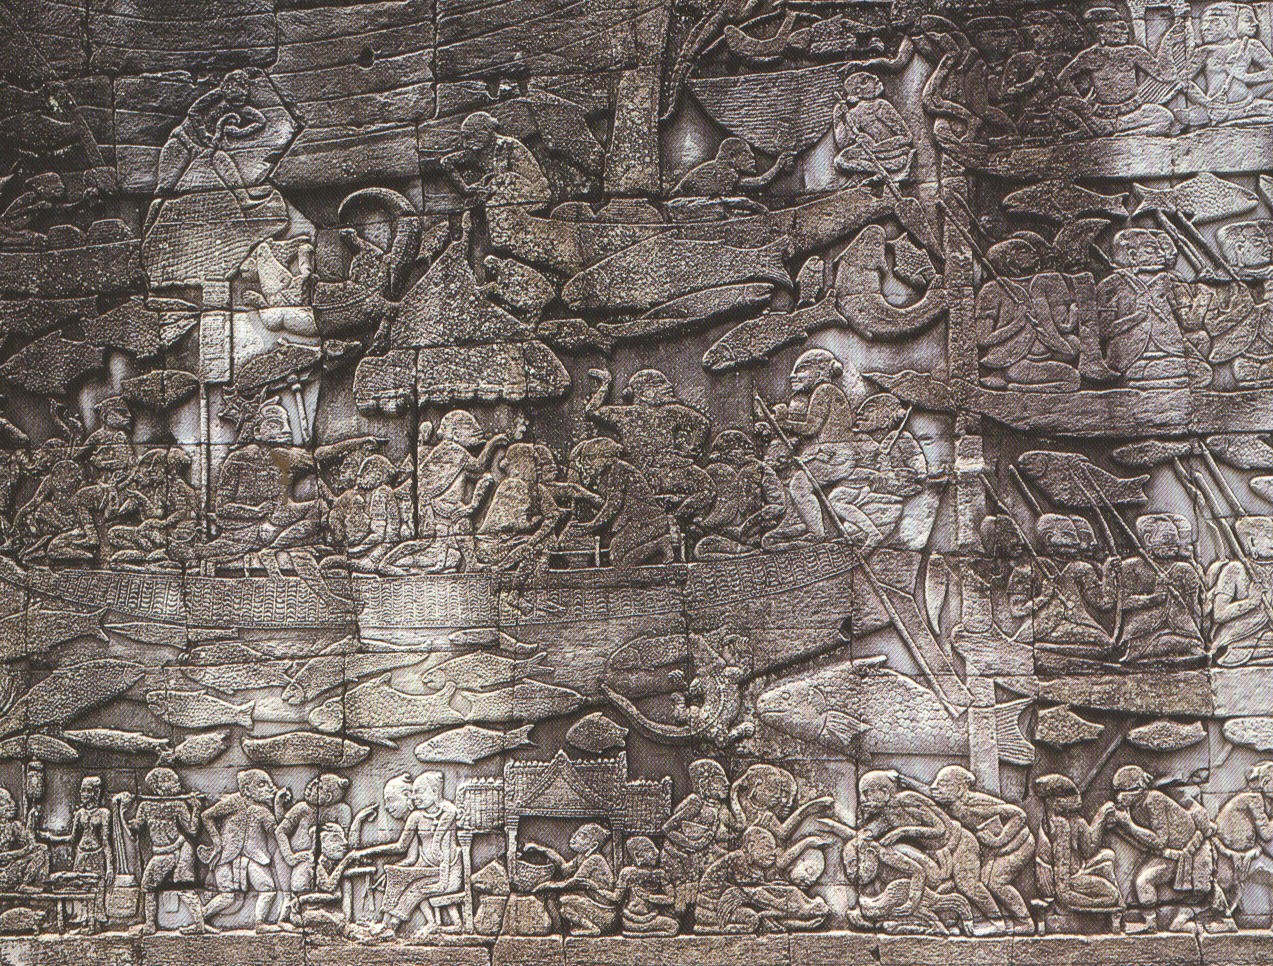 A life scene in Ancient Cambodia